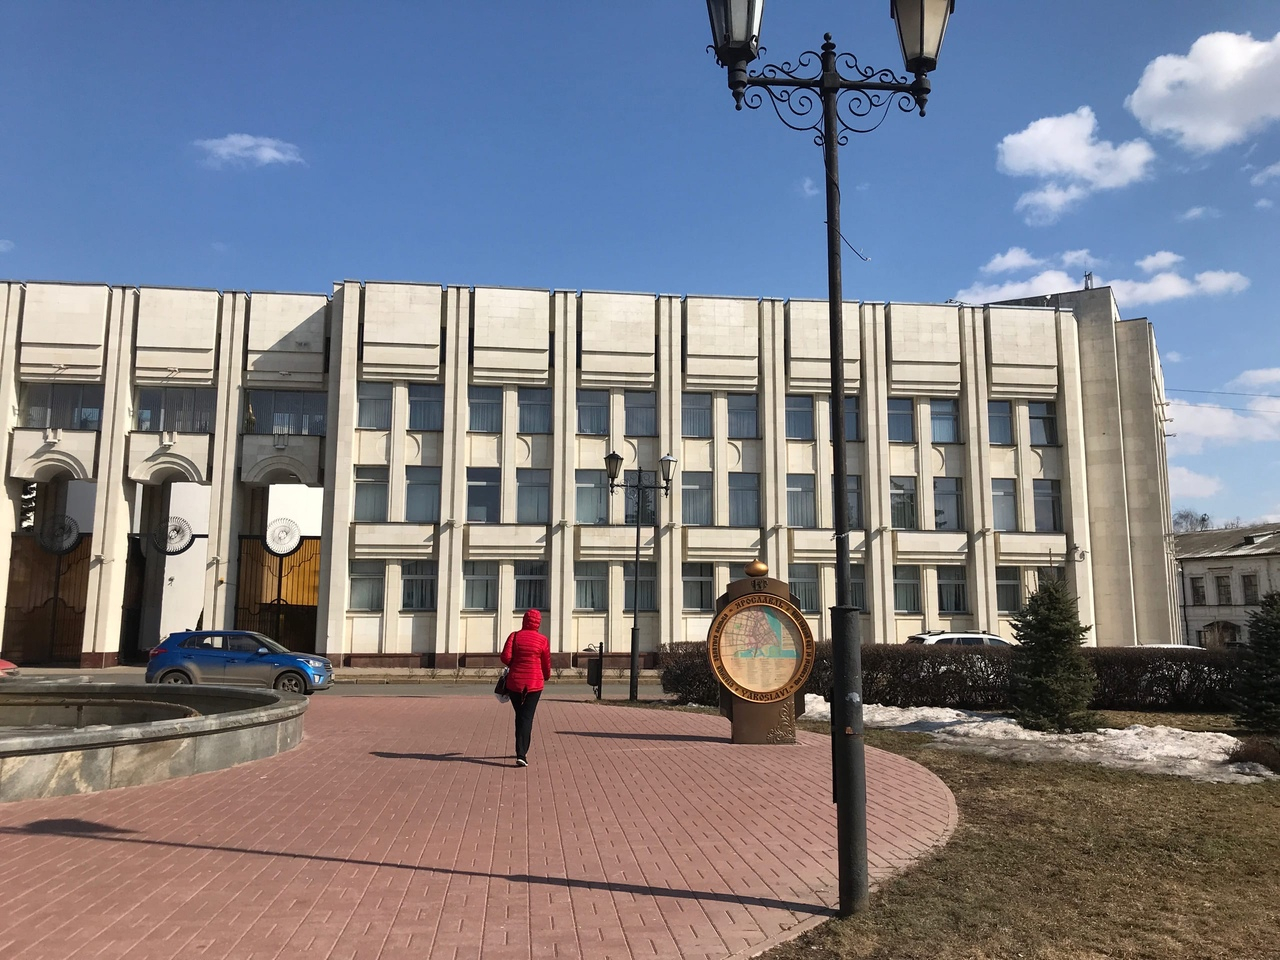 Миллиарды потратят на волейбольный центр в Ярославле: правительство ищет подрядчика